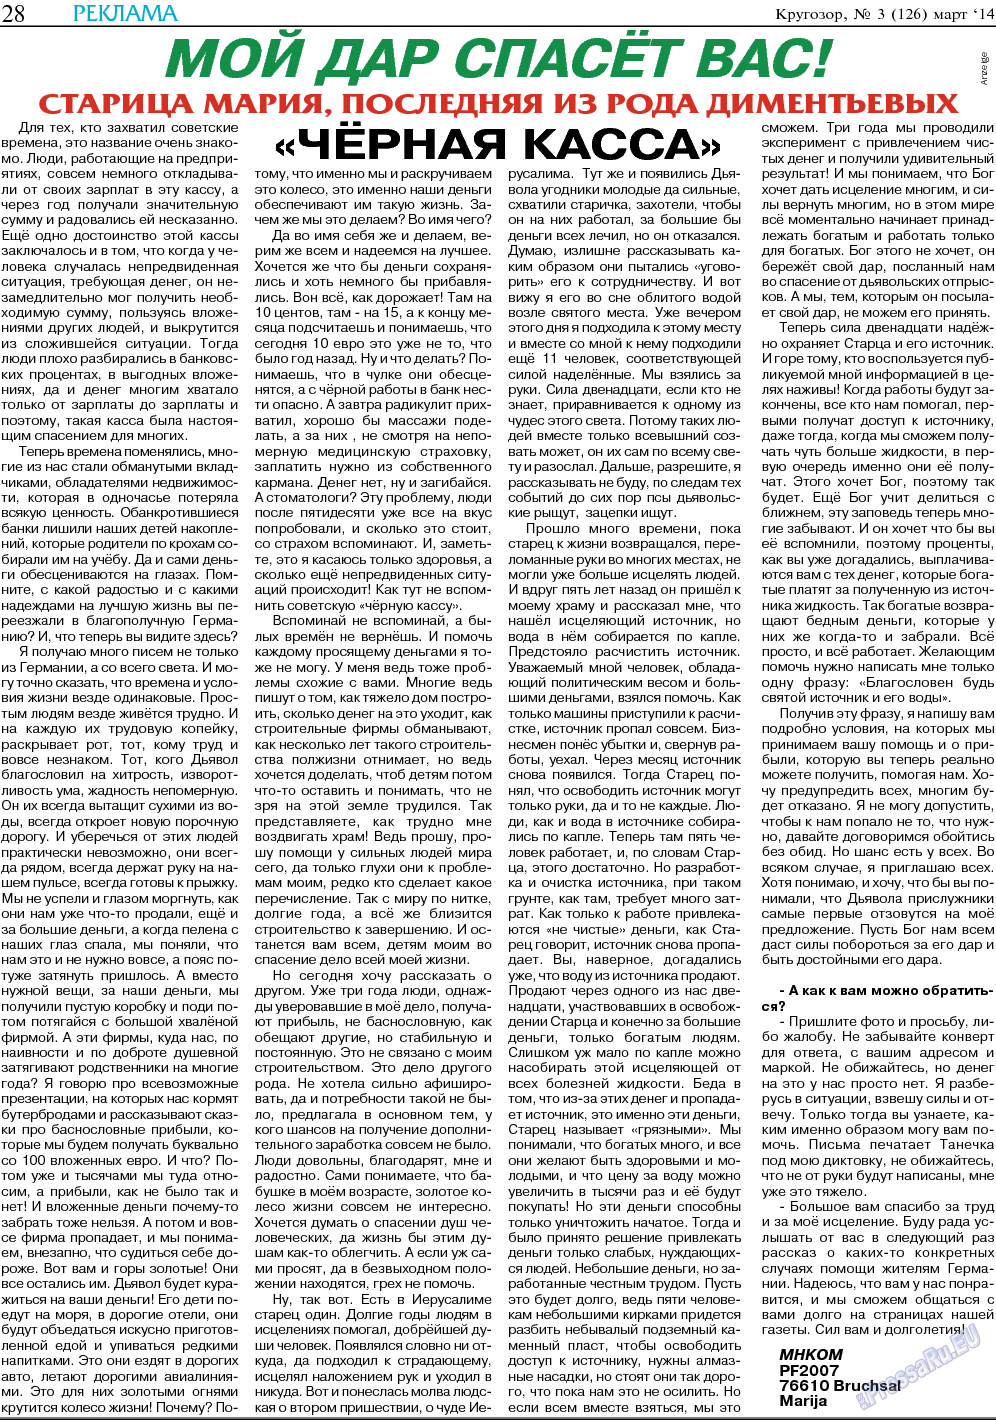 Кругозор (газета). 2014 год, номер 3, стр. 28